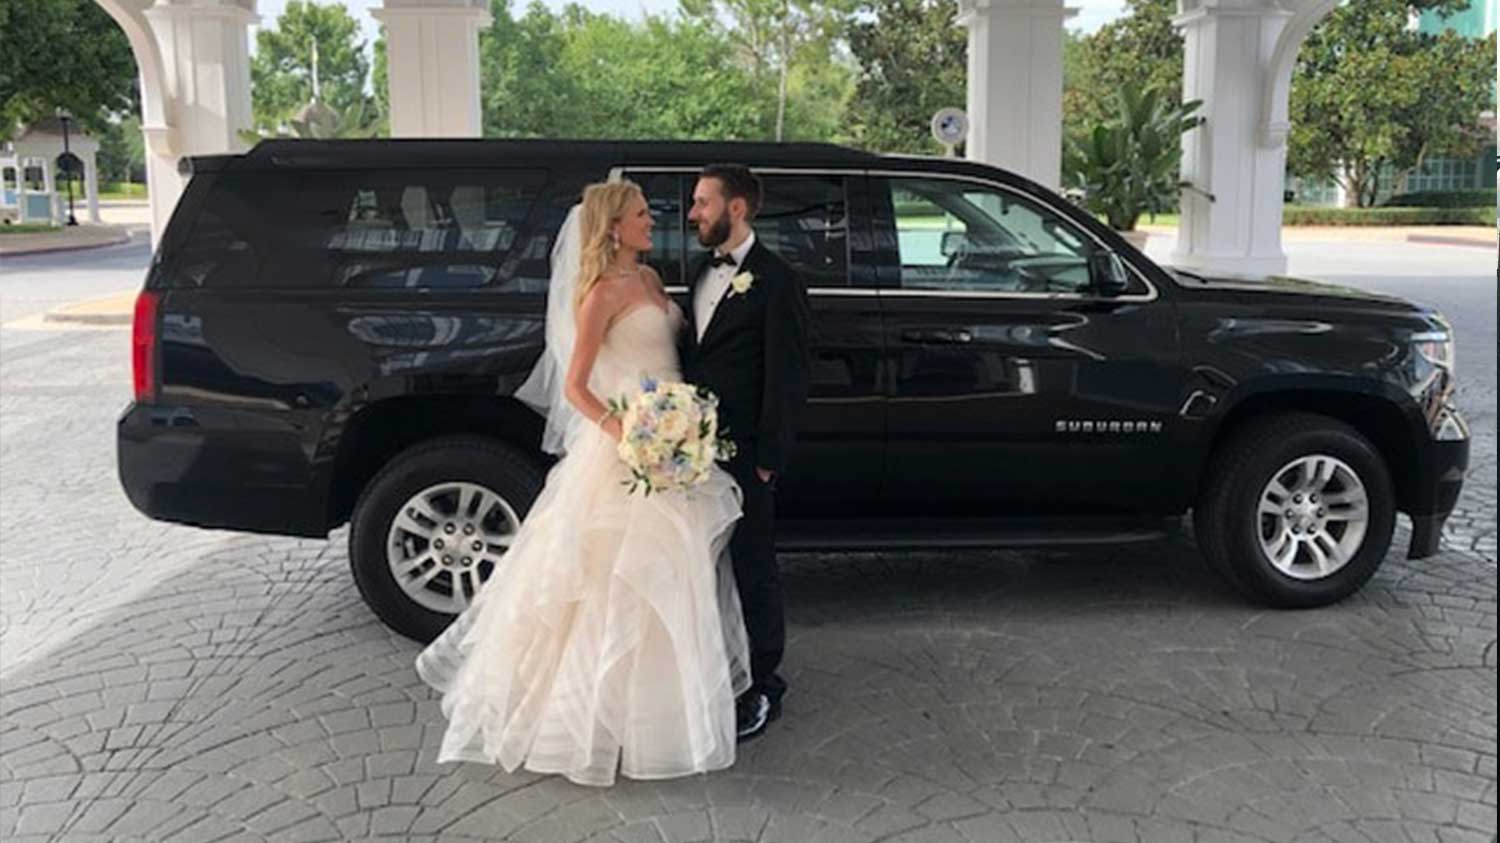 SUV Rental for Wedding Transportation in Atlanta GA